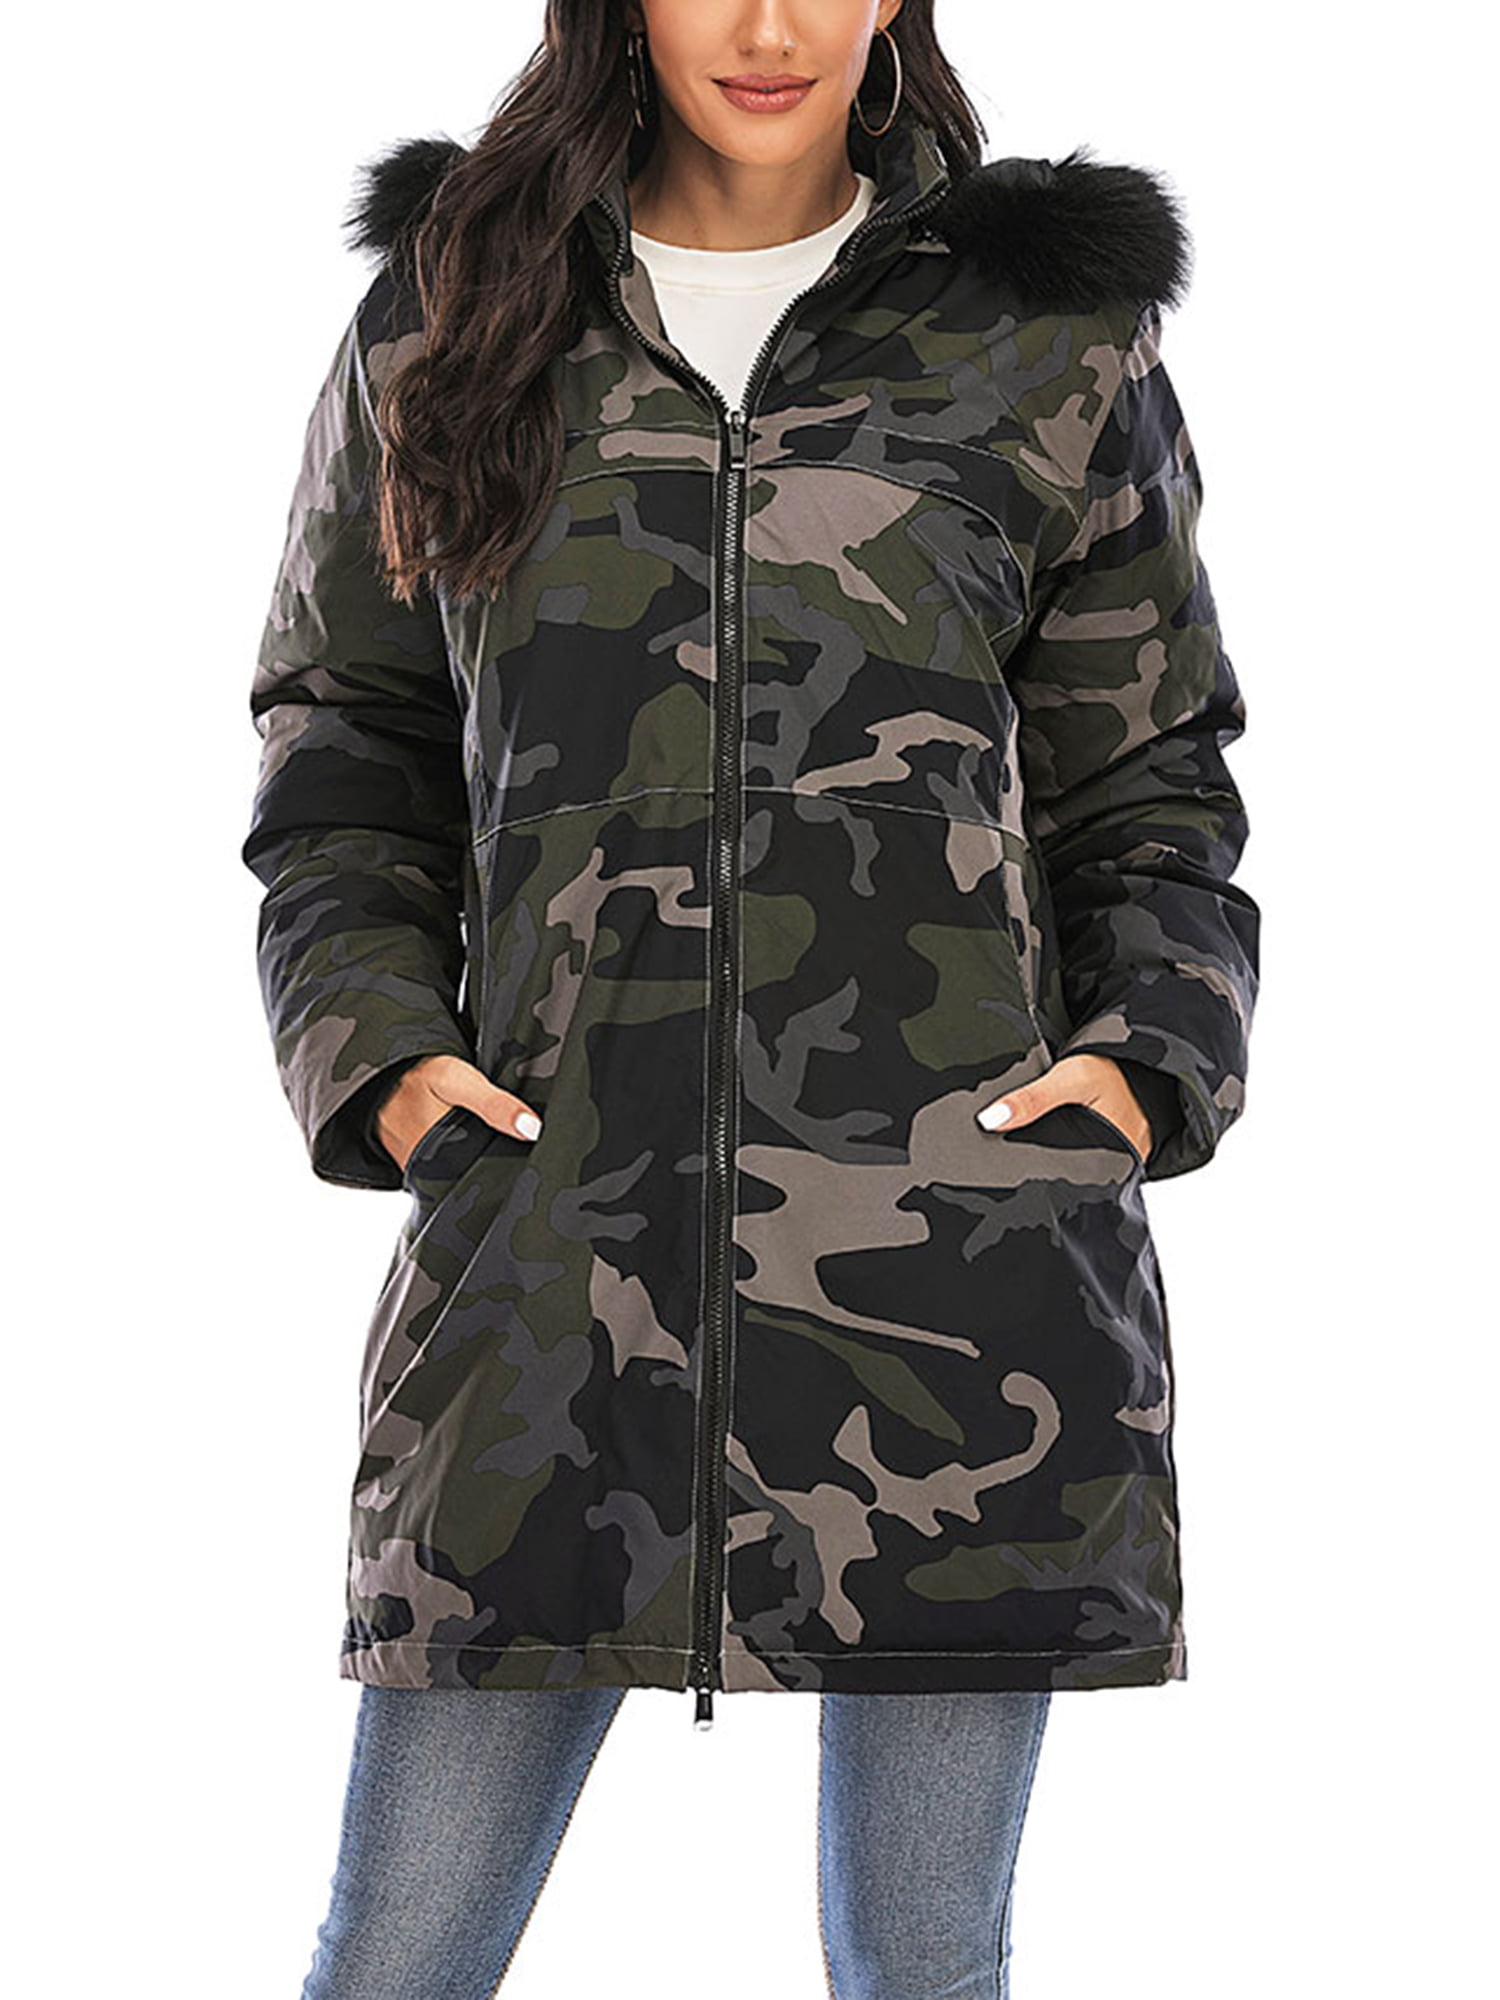 Dodoing - Women's Winter Warm Jacket Coat Oversize Fur Collar Hoodie ...